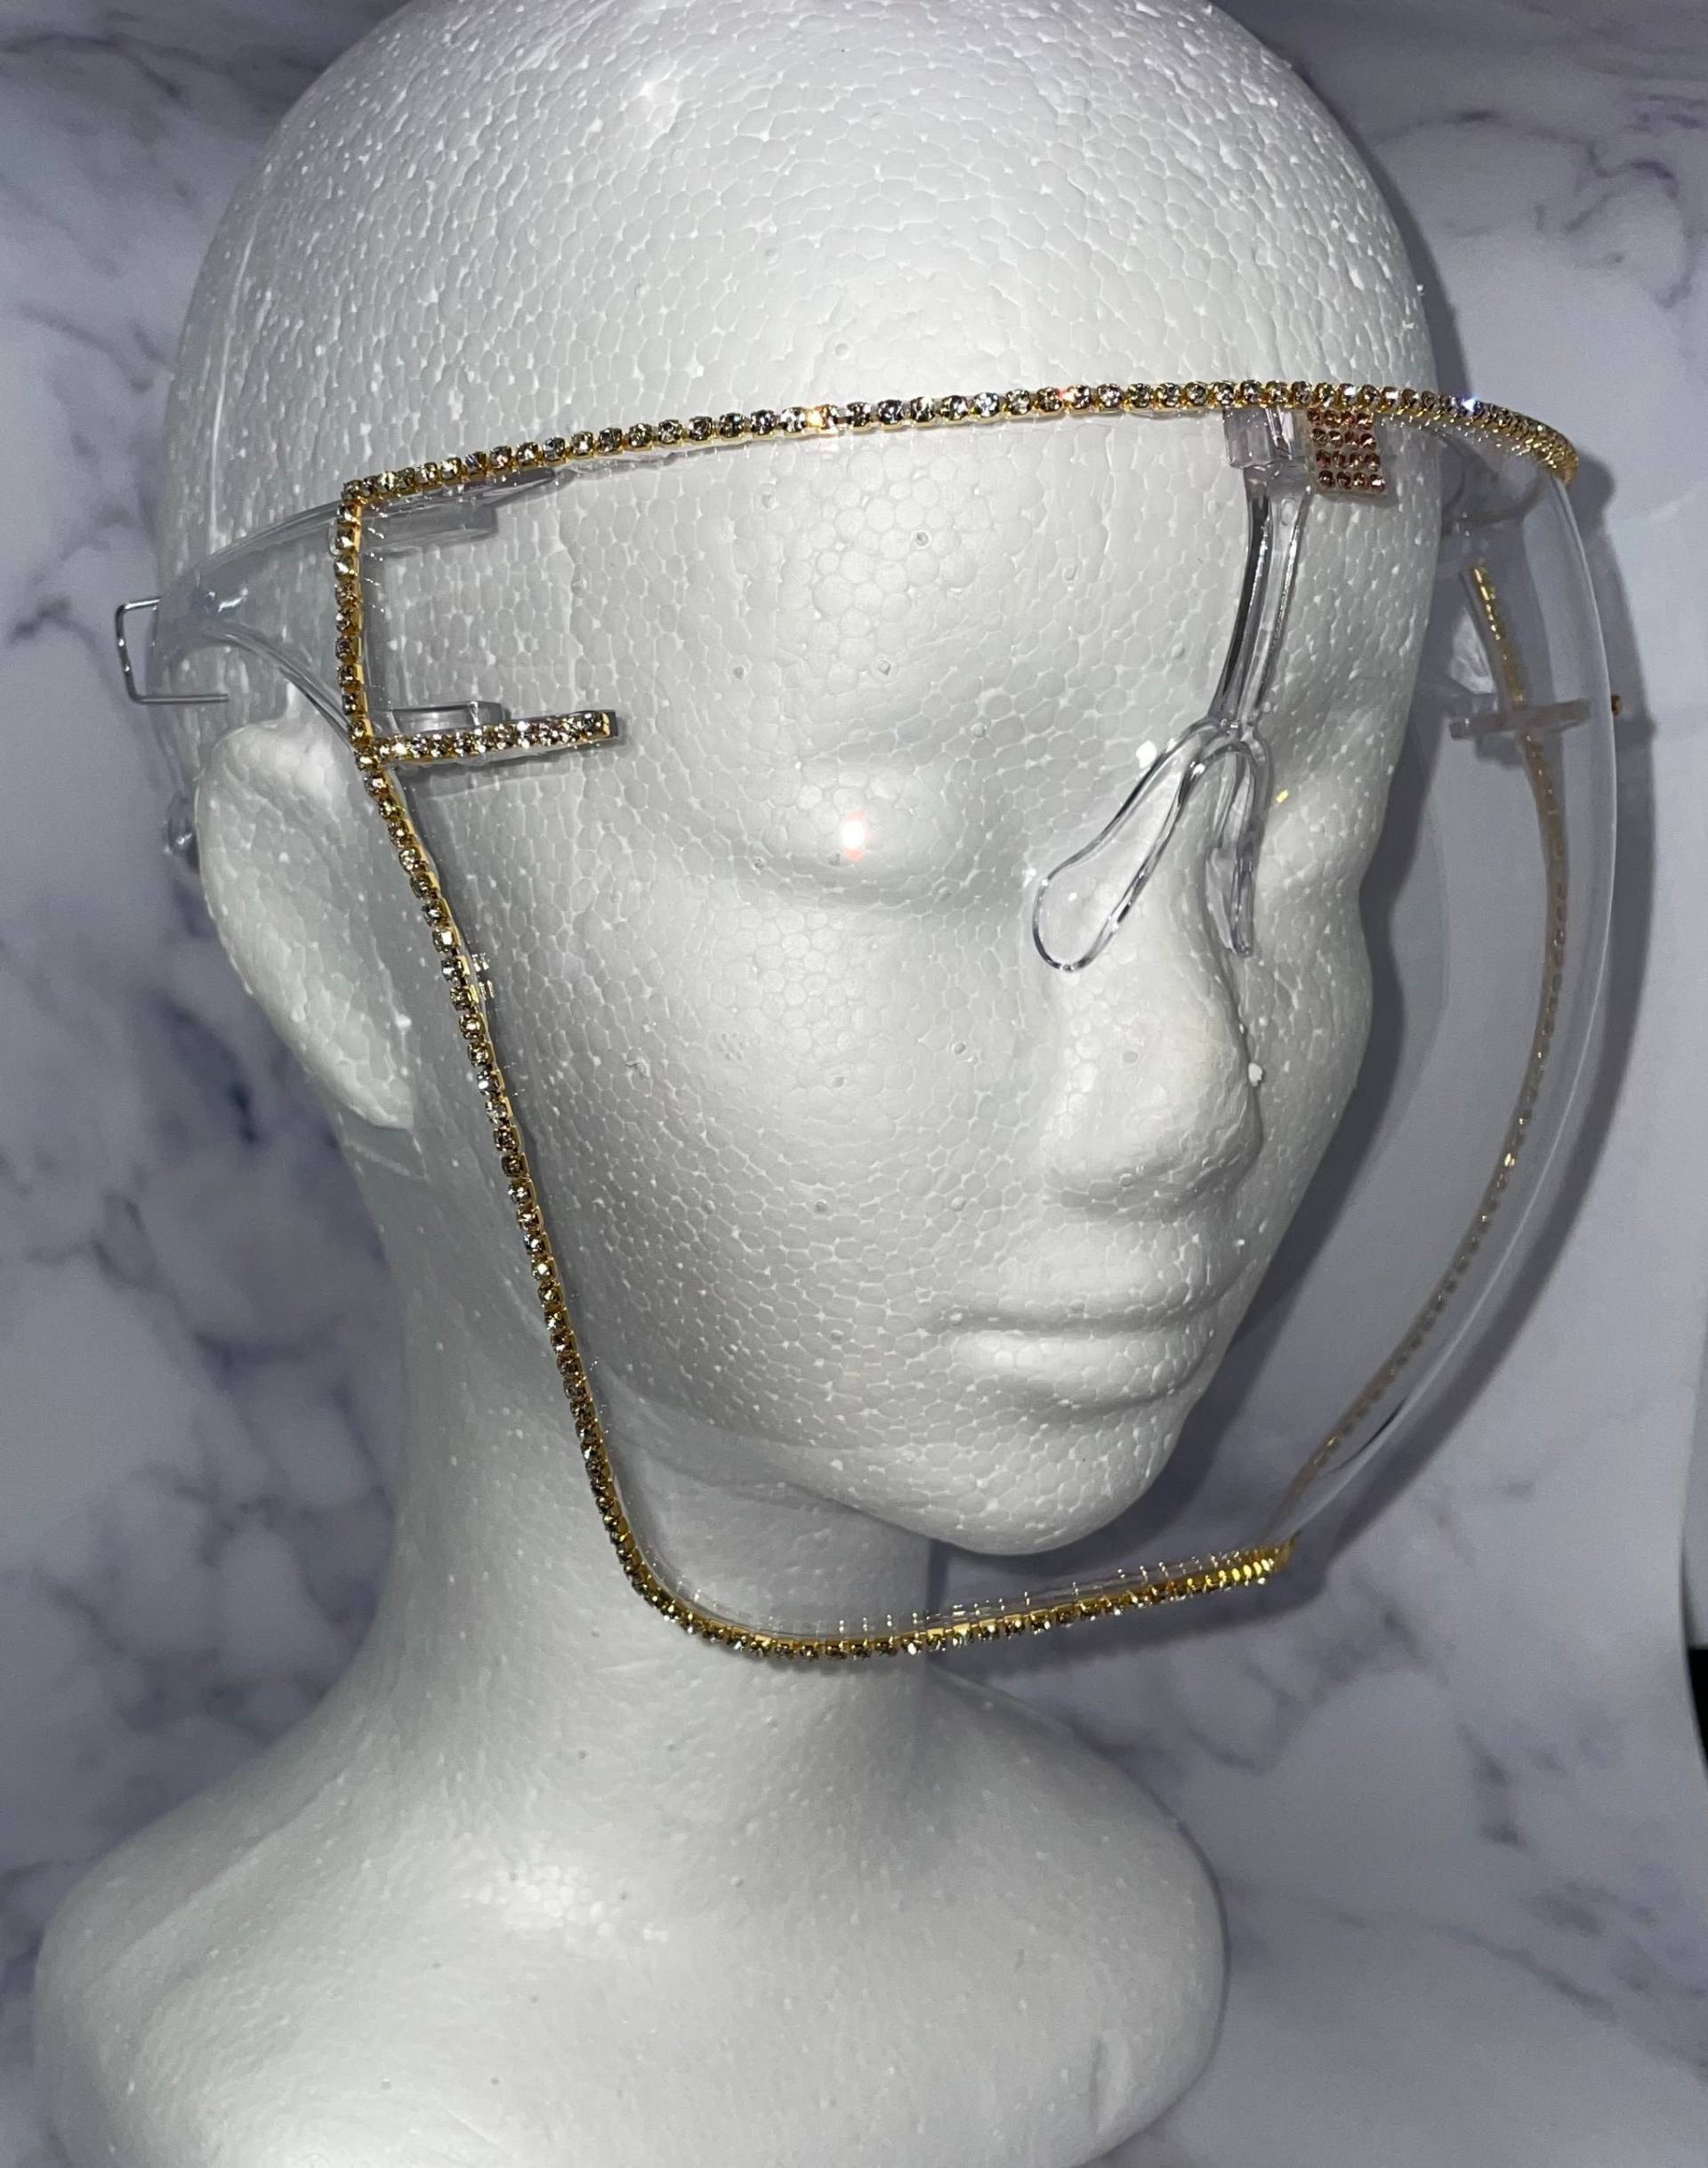 Gesichtsschutz | Goldbling Schild Hübscher Glam Astro Klar Anti-Fog von Etsy - DesignsByJMoB